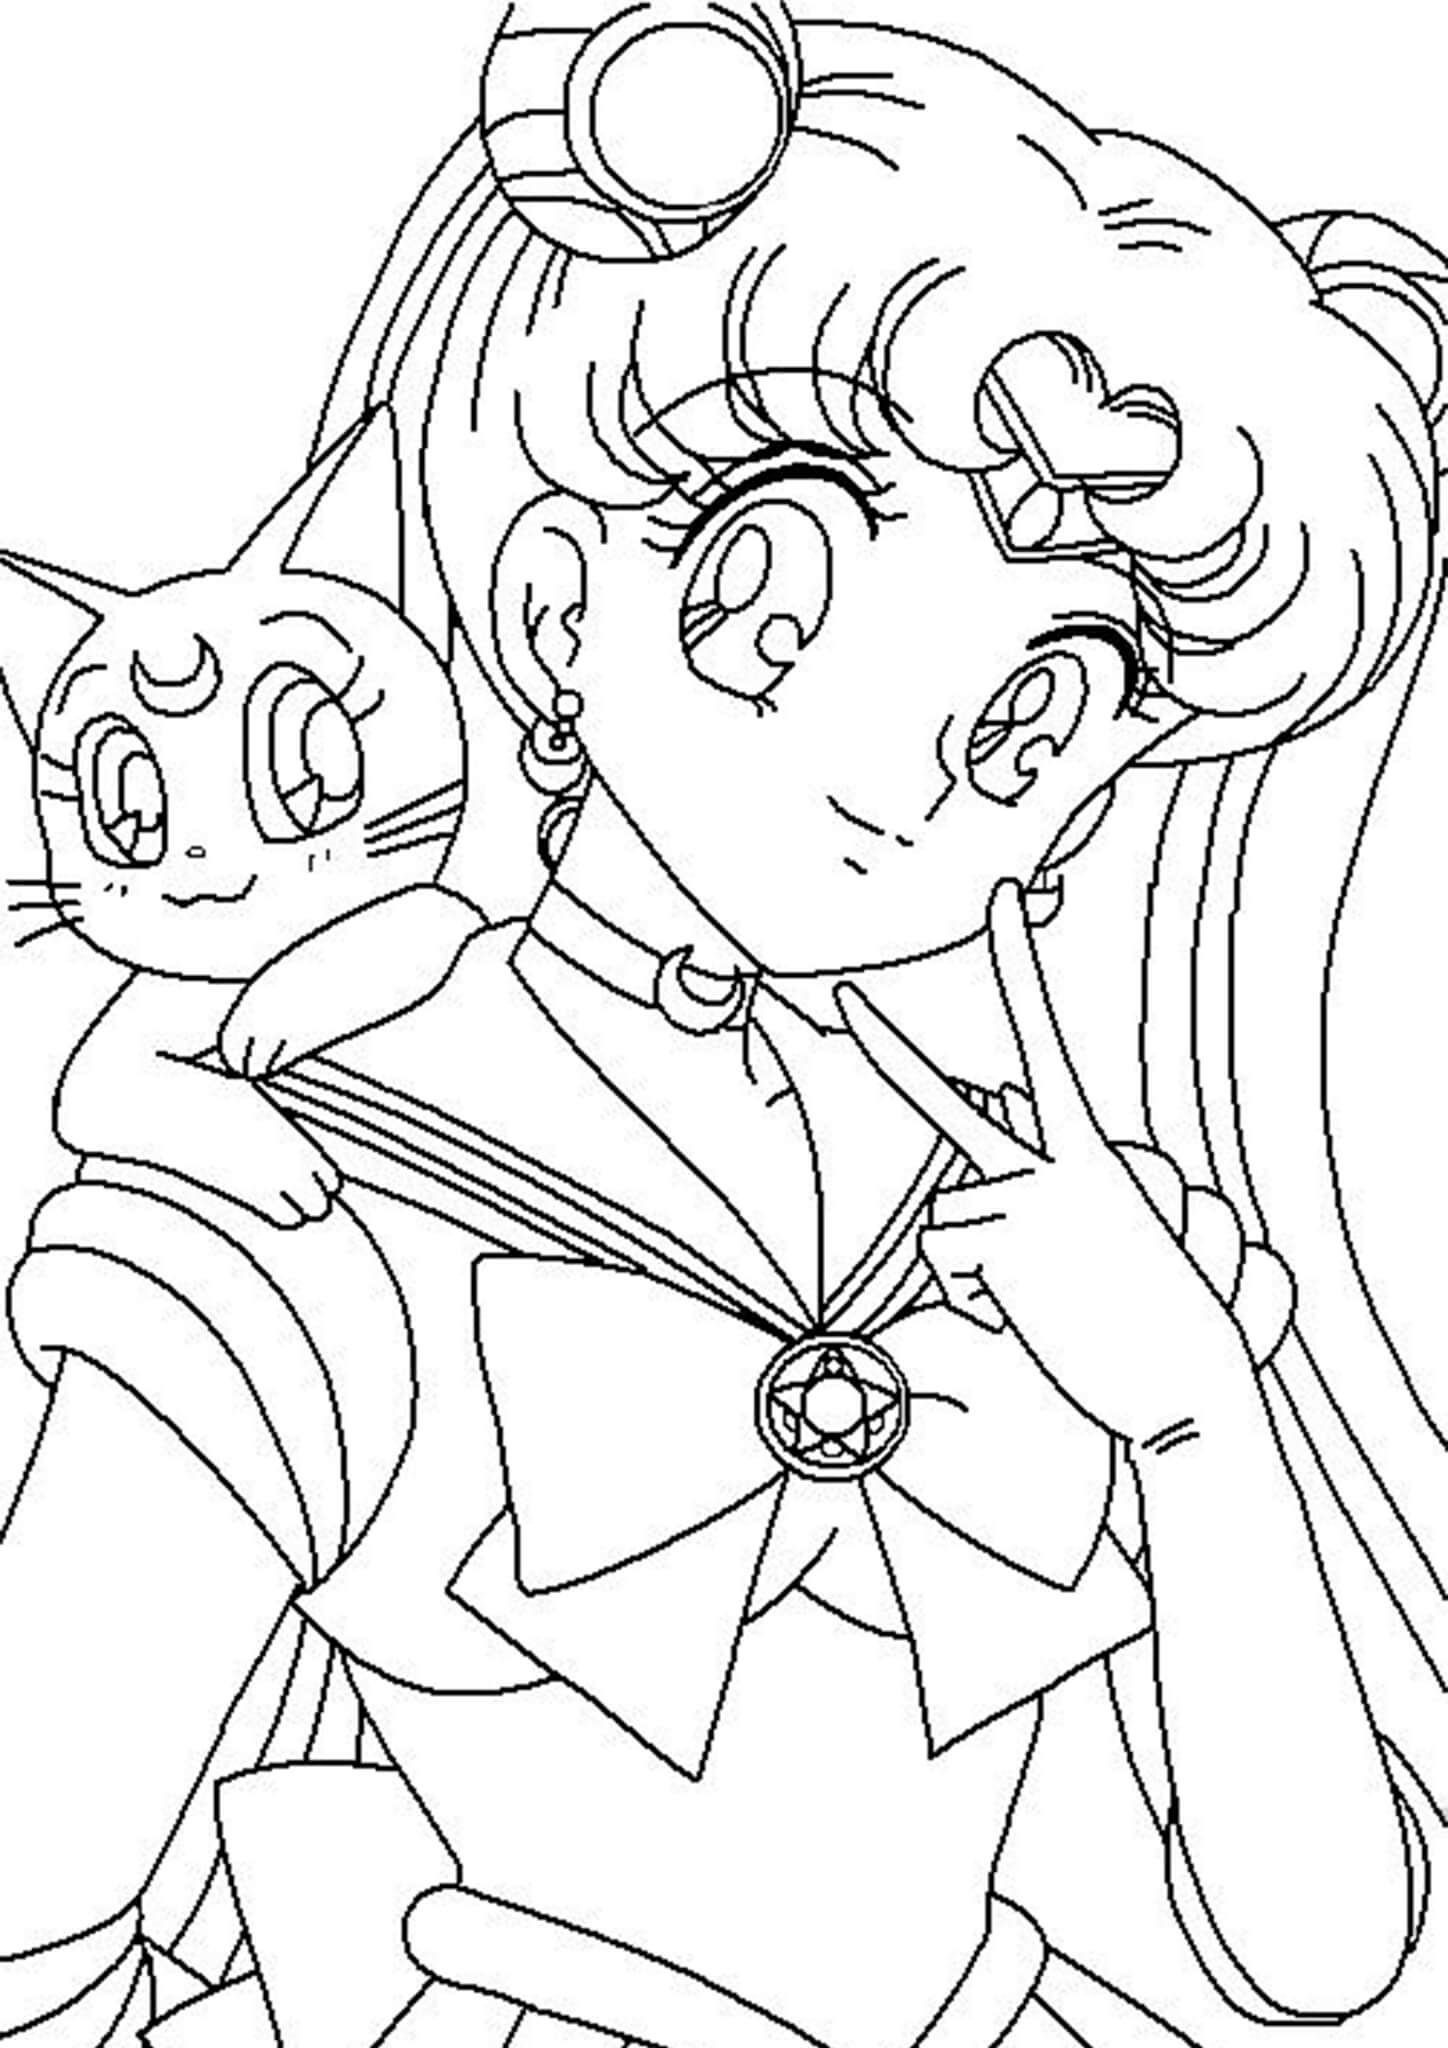 Vẽ Thuỷ Thủ Mặt Trăng  Draw Sailor Moon  An Pi TV Coloring  YouTube